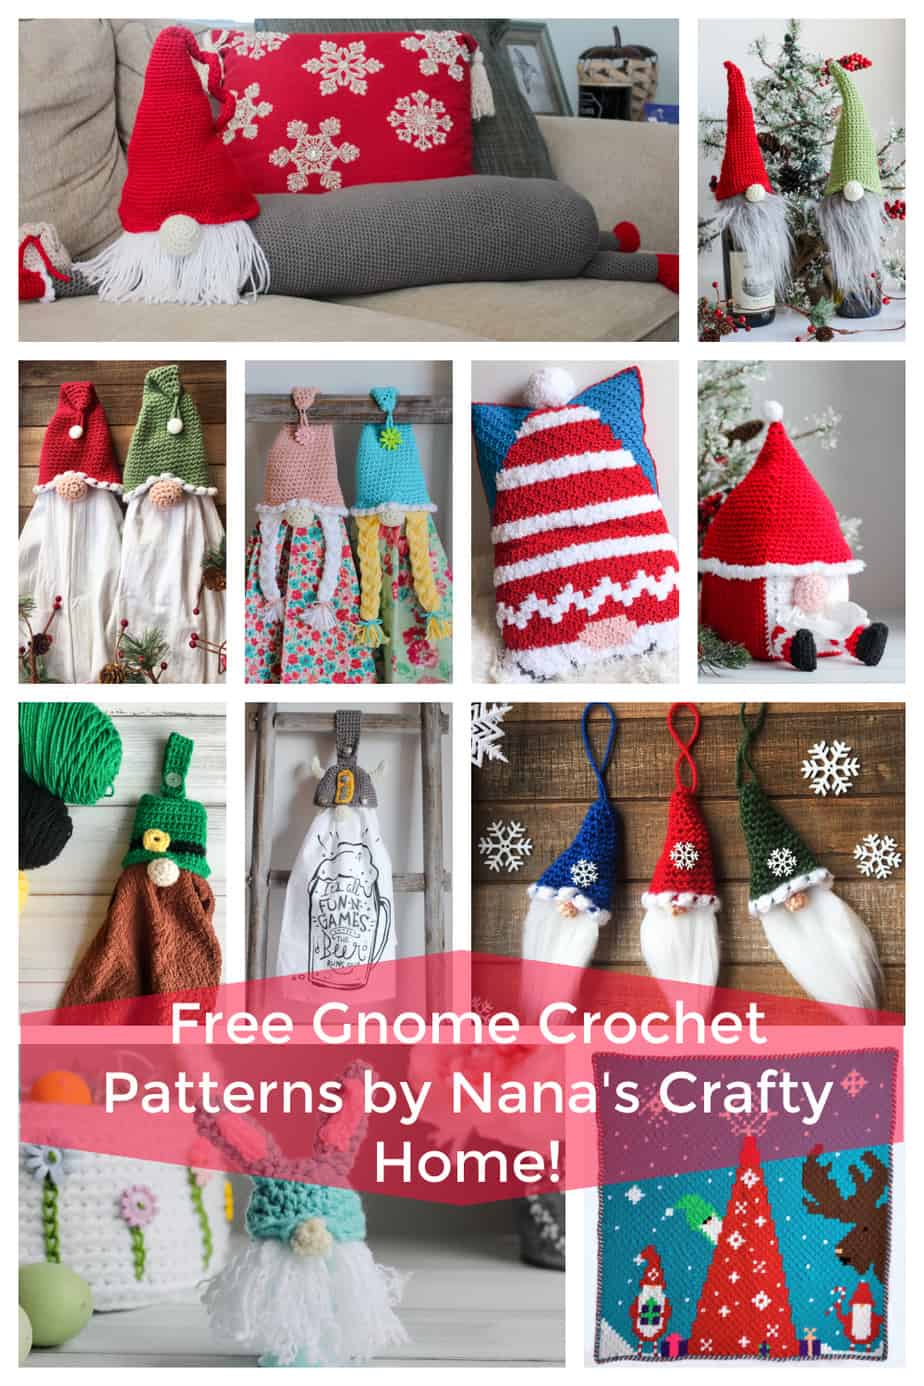 Free Gnome Patterns crochet pattern roundup